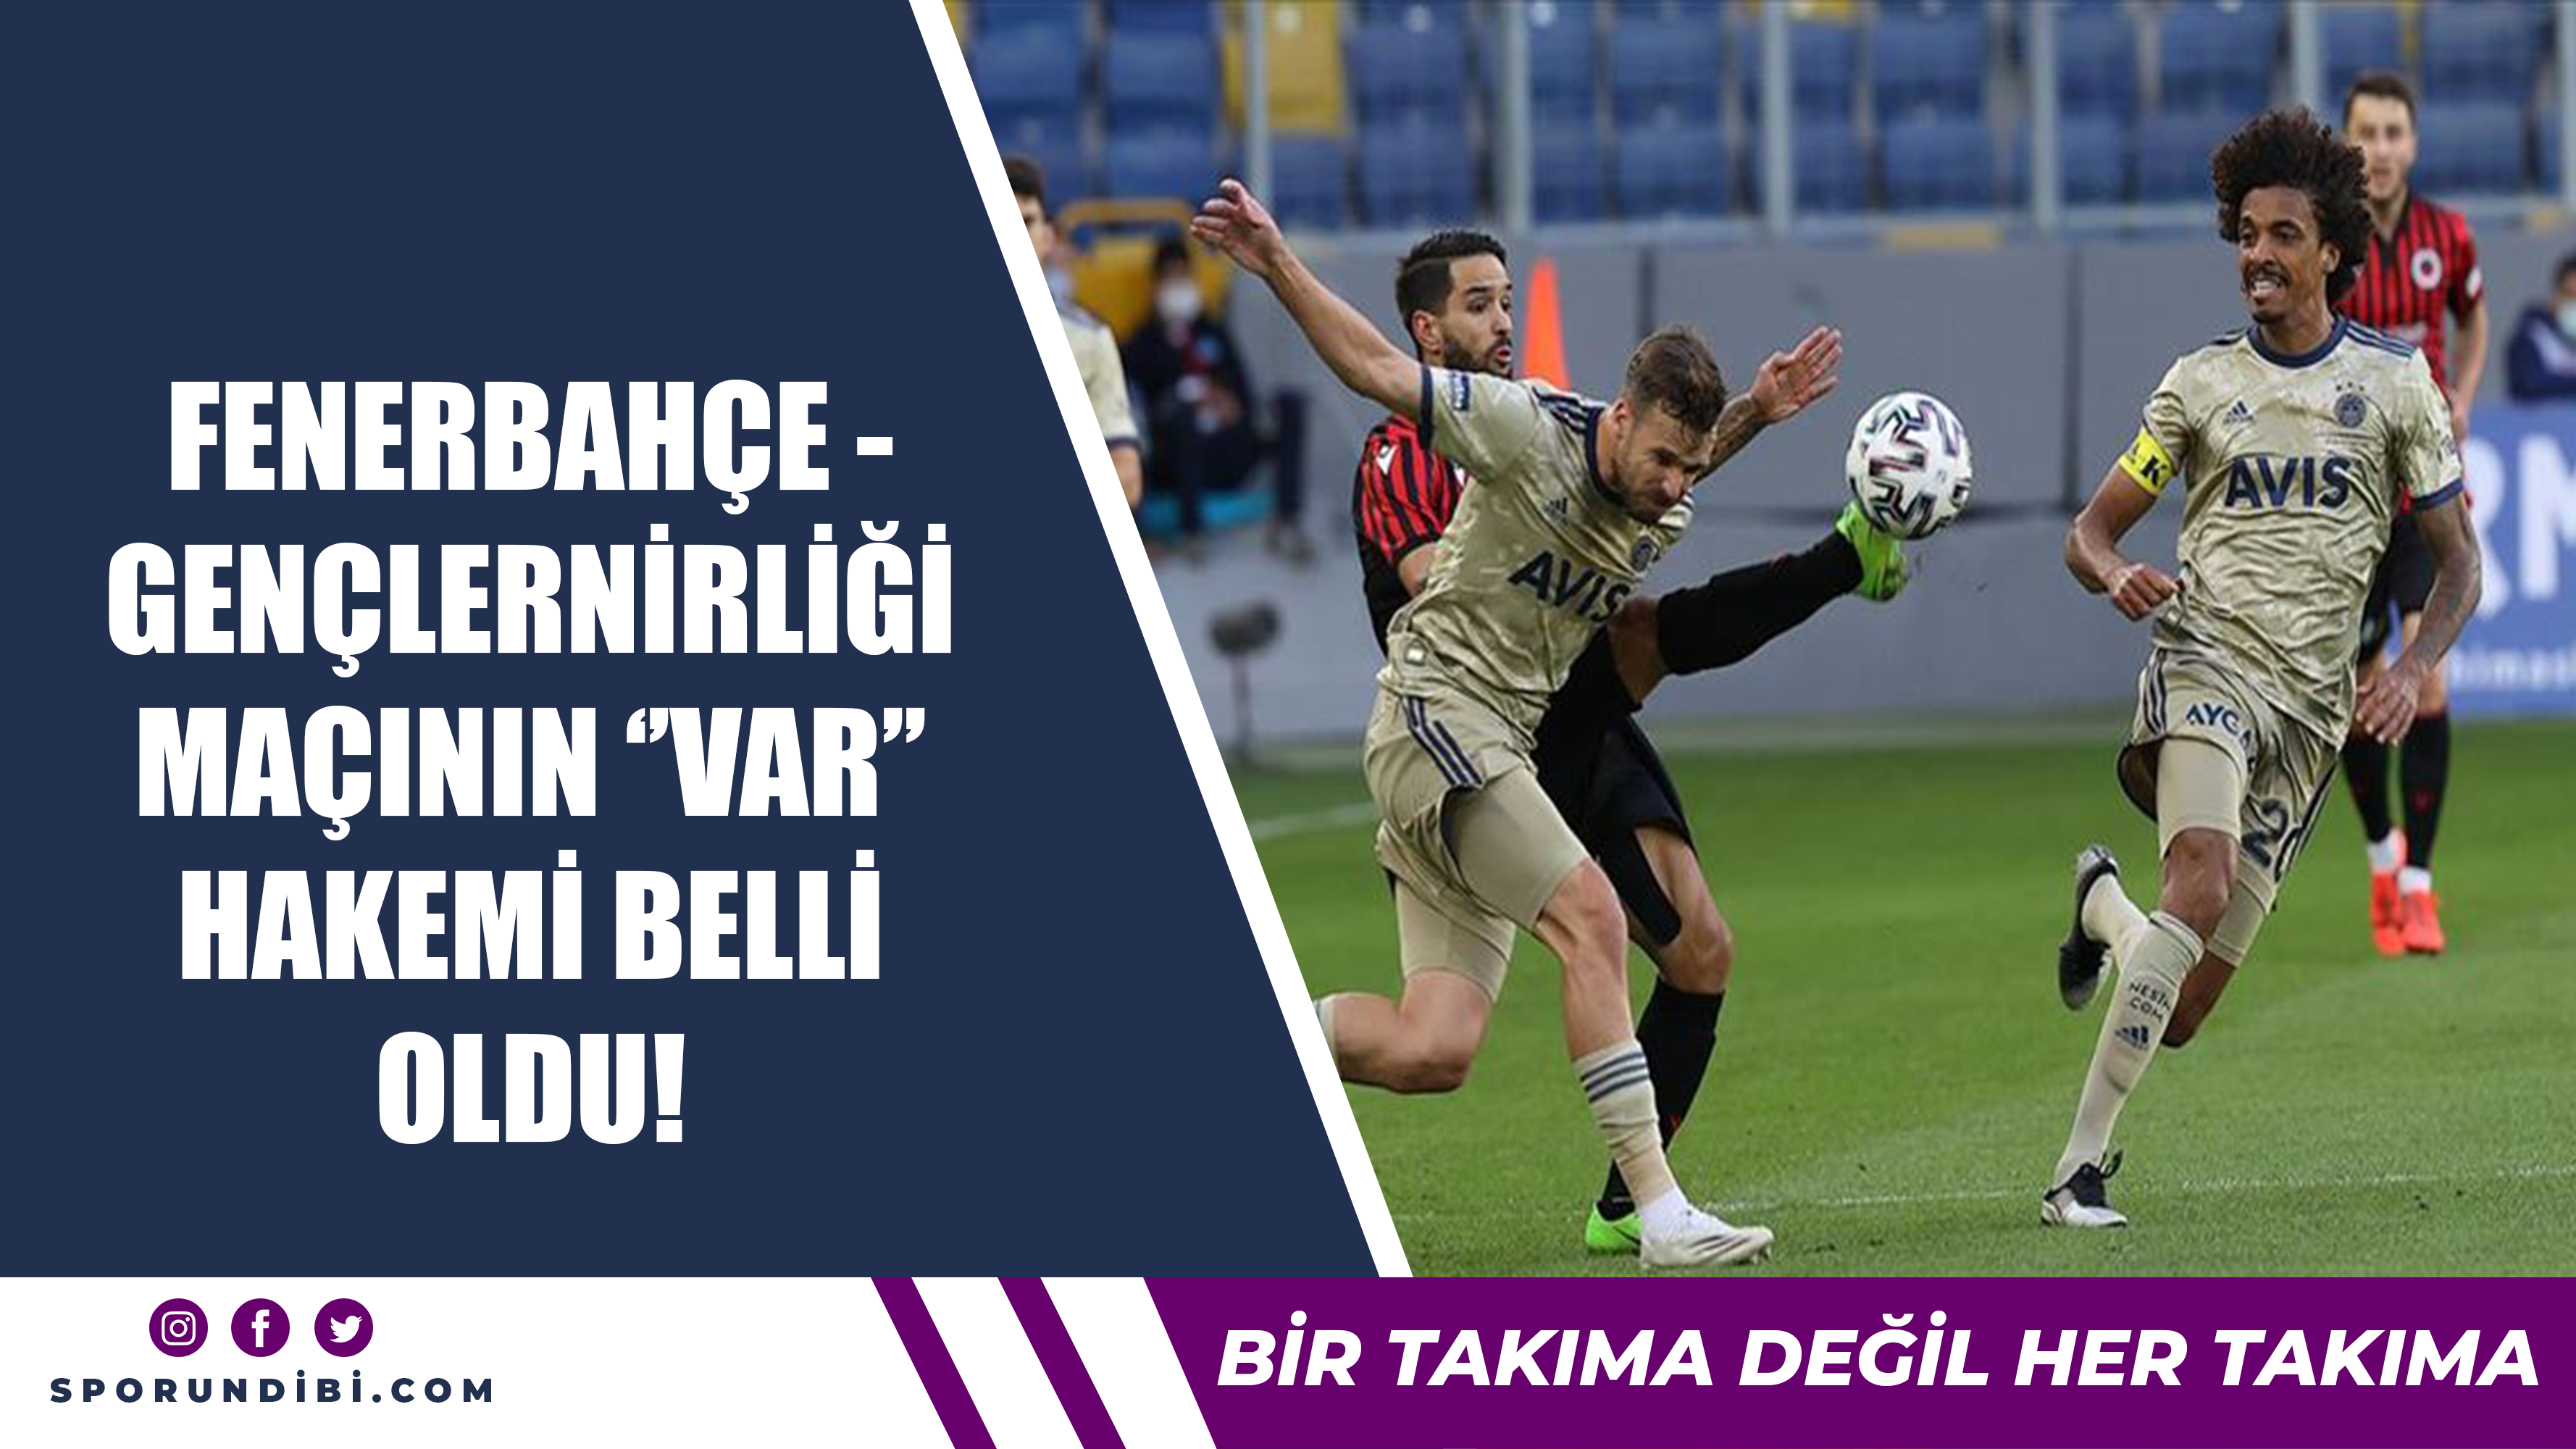 Fenerbahçe - Gençlerirliği maçının ''VAR'' hakemi belli oldu!